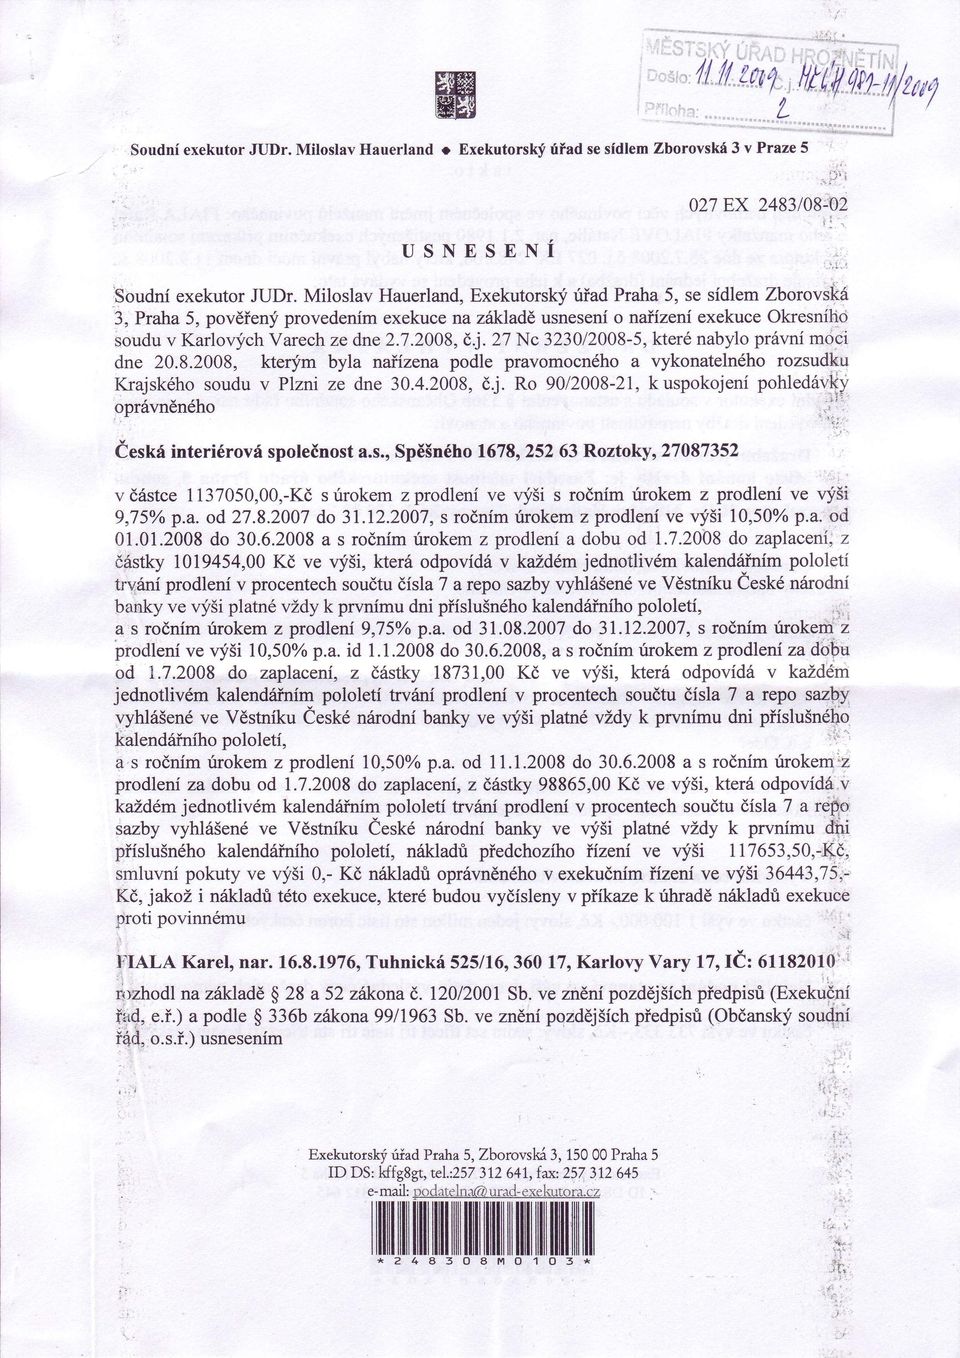 27 Nc 3230/2008-5,které nabylo prévní moci dne 20.8.2008, kterfm byla naiízena podle pravomocného a vykonatelného rozsudku Krajského soudu v Plzni ze dne 30.4.20ó8,èj.